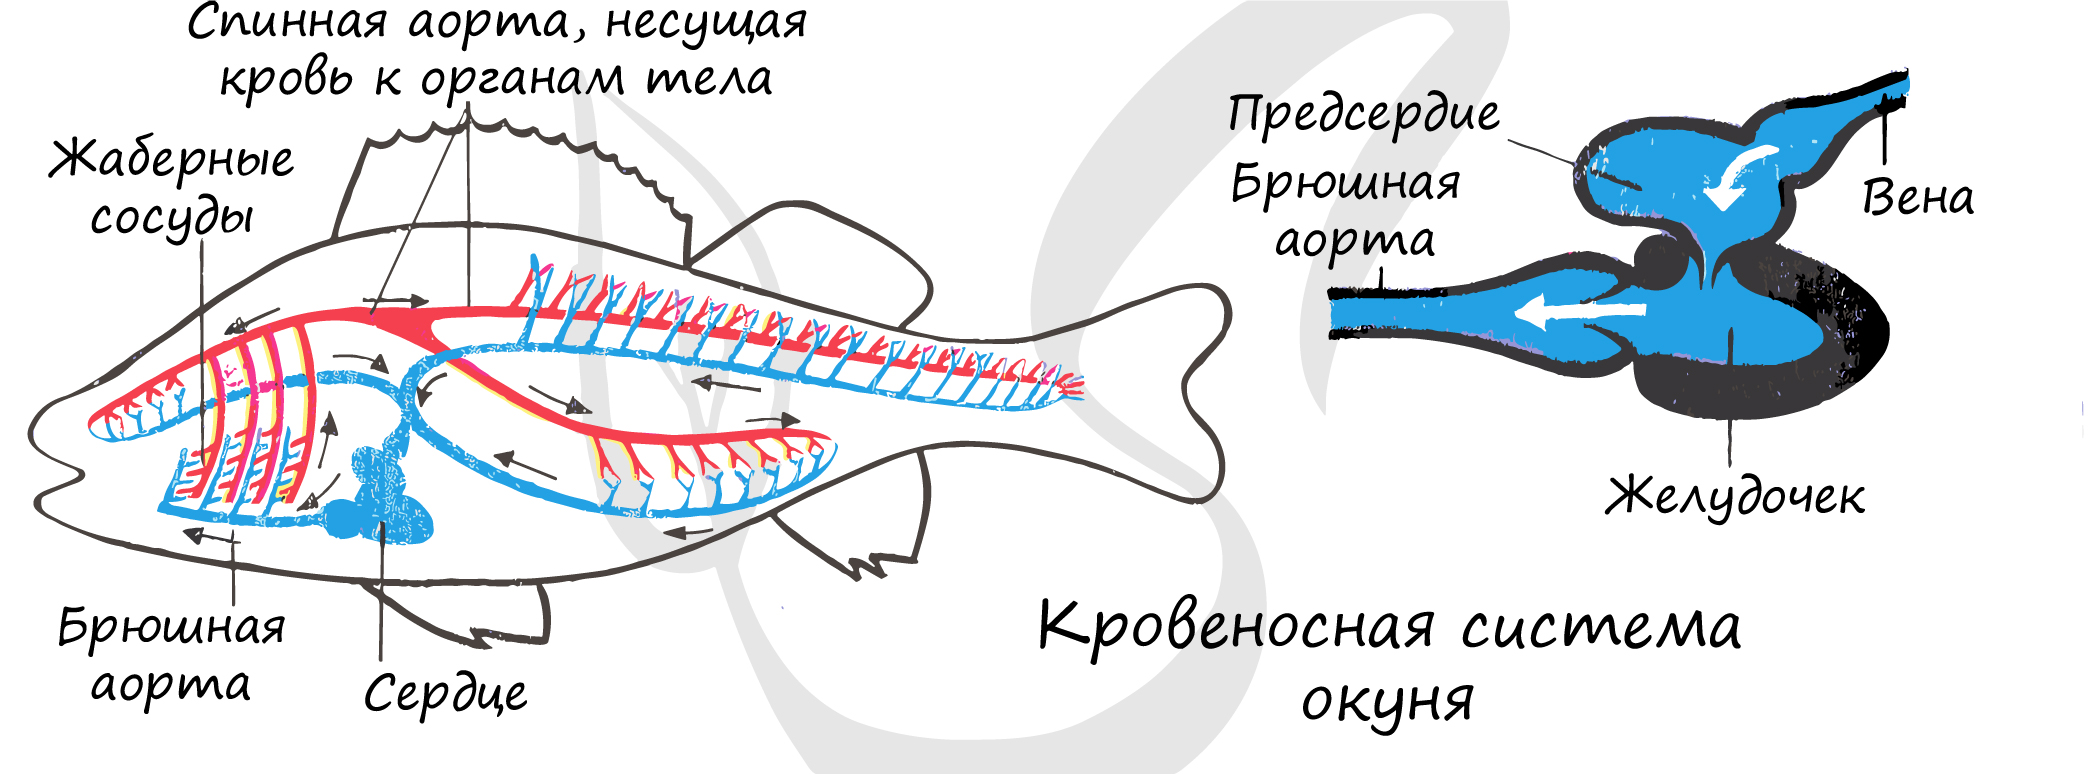 Схема строения кровеносной системы костной рыбы. Кровеносная система рыб схема 7 класс. Внутреннее строение речного окуня кровеносная система. Кровеносная система у рыб представлена кровообращения.